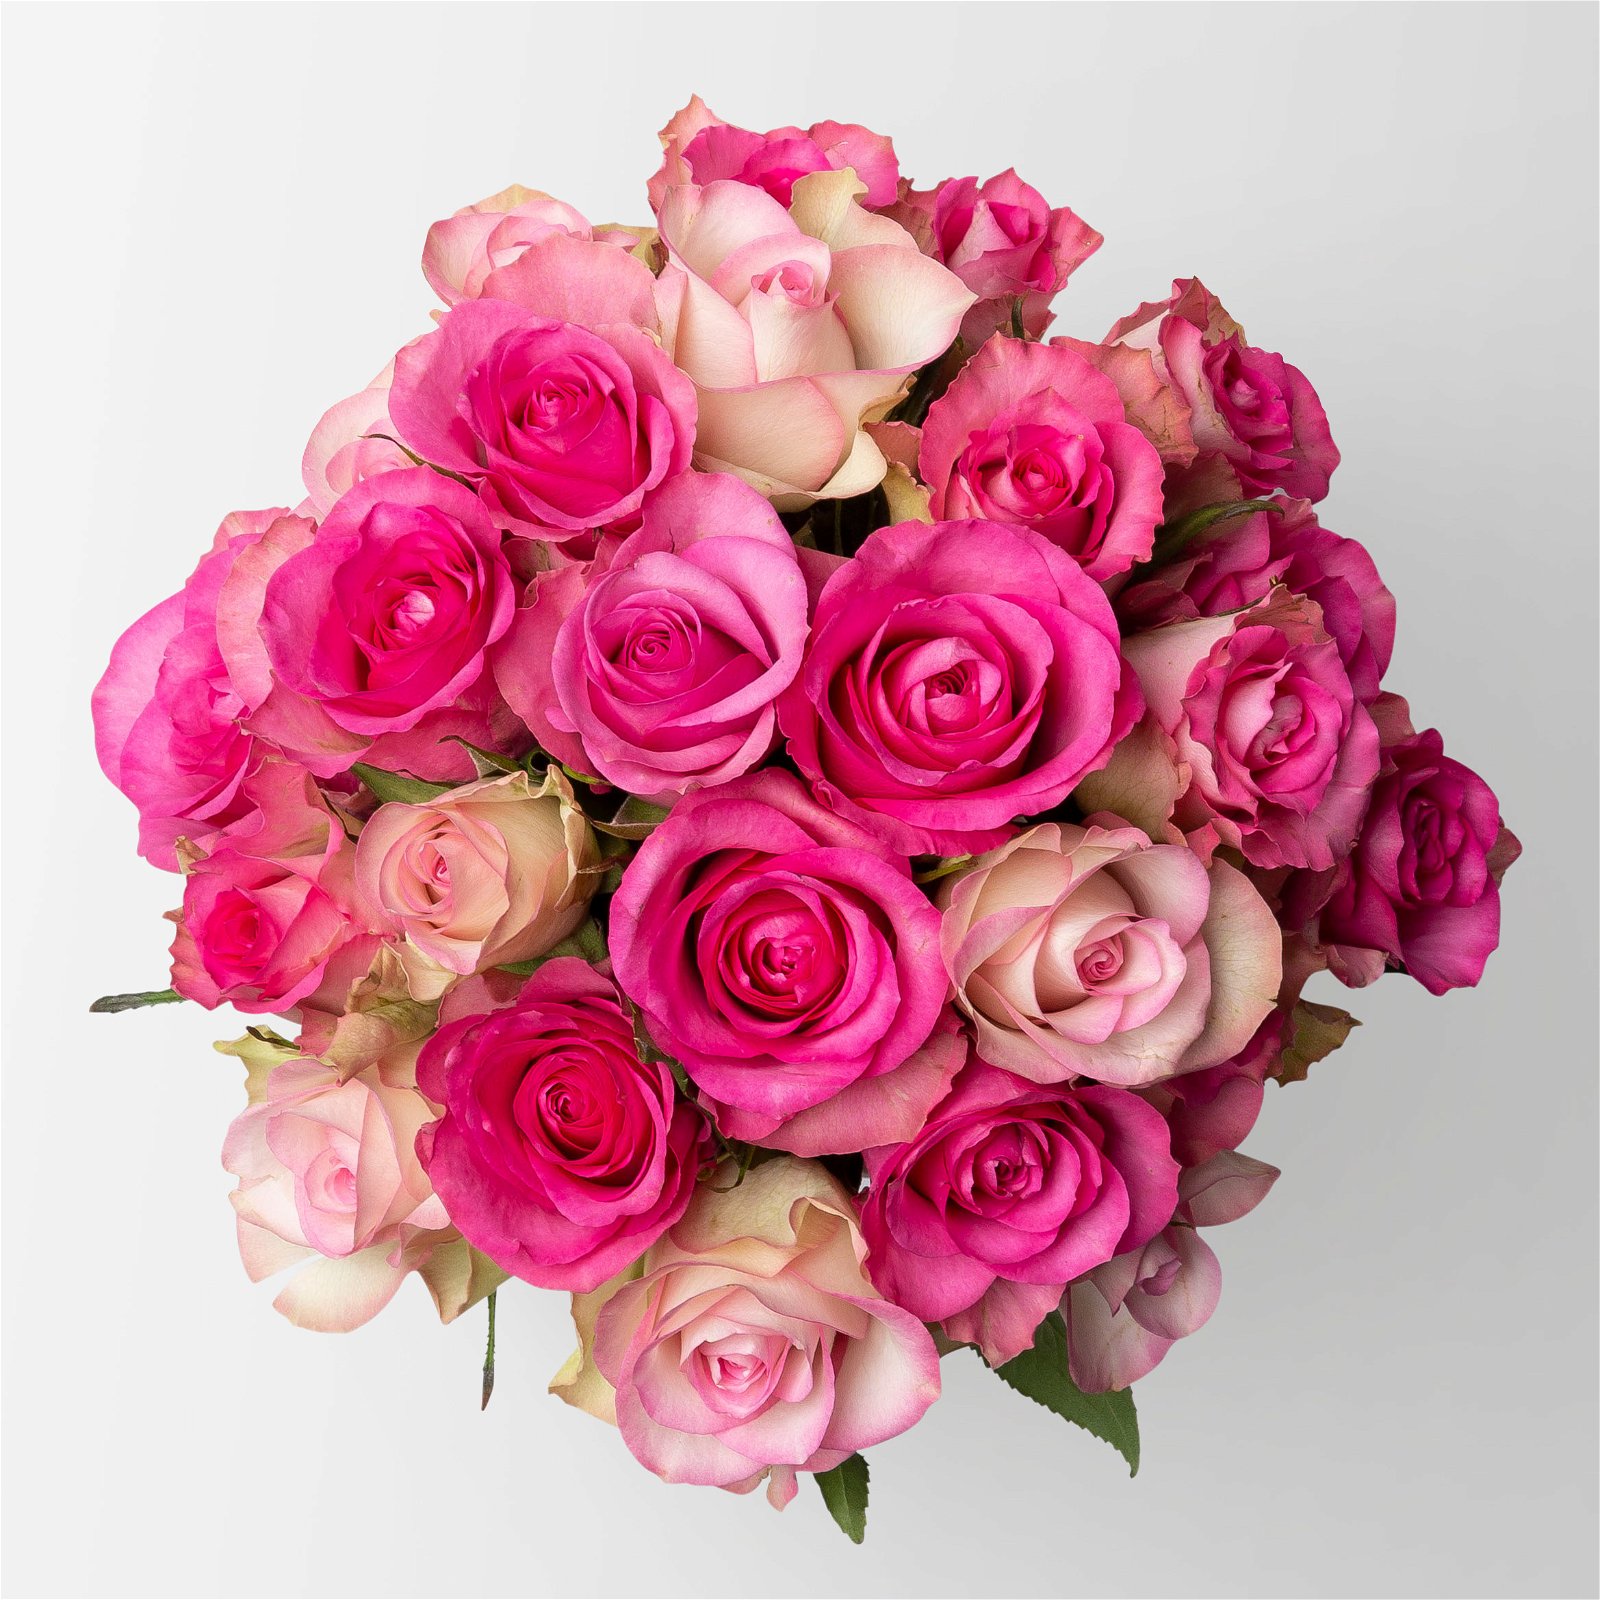 Blumenbund mit gemischten Rosen, Rosatöne, 25er-Bund, inkl. gratis Grußkarte